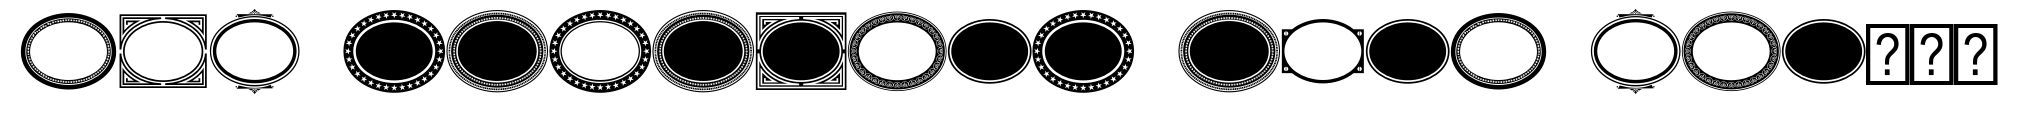 LHF Monogram Oval Frames image